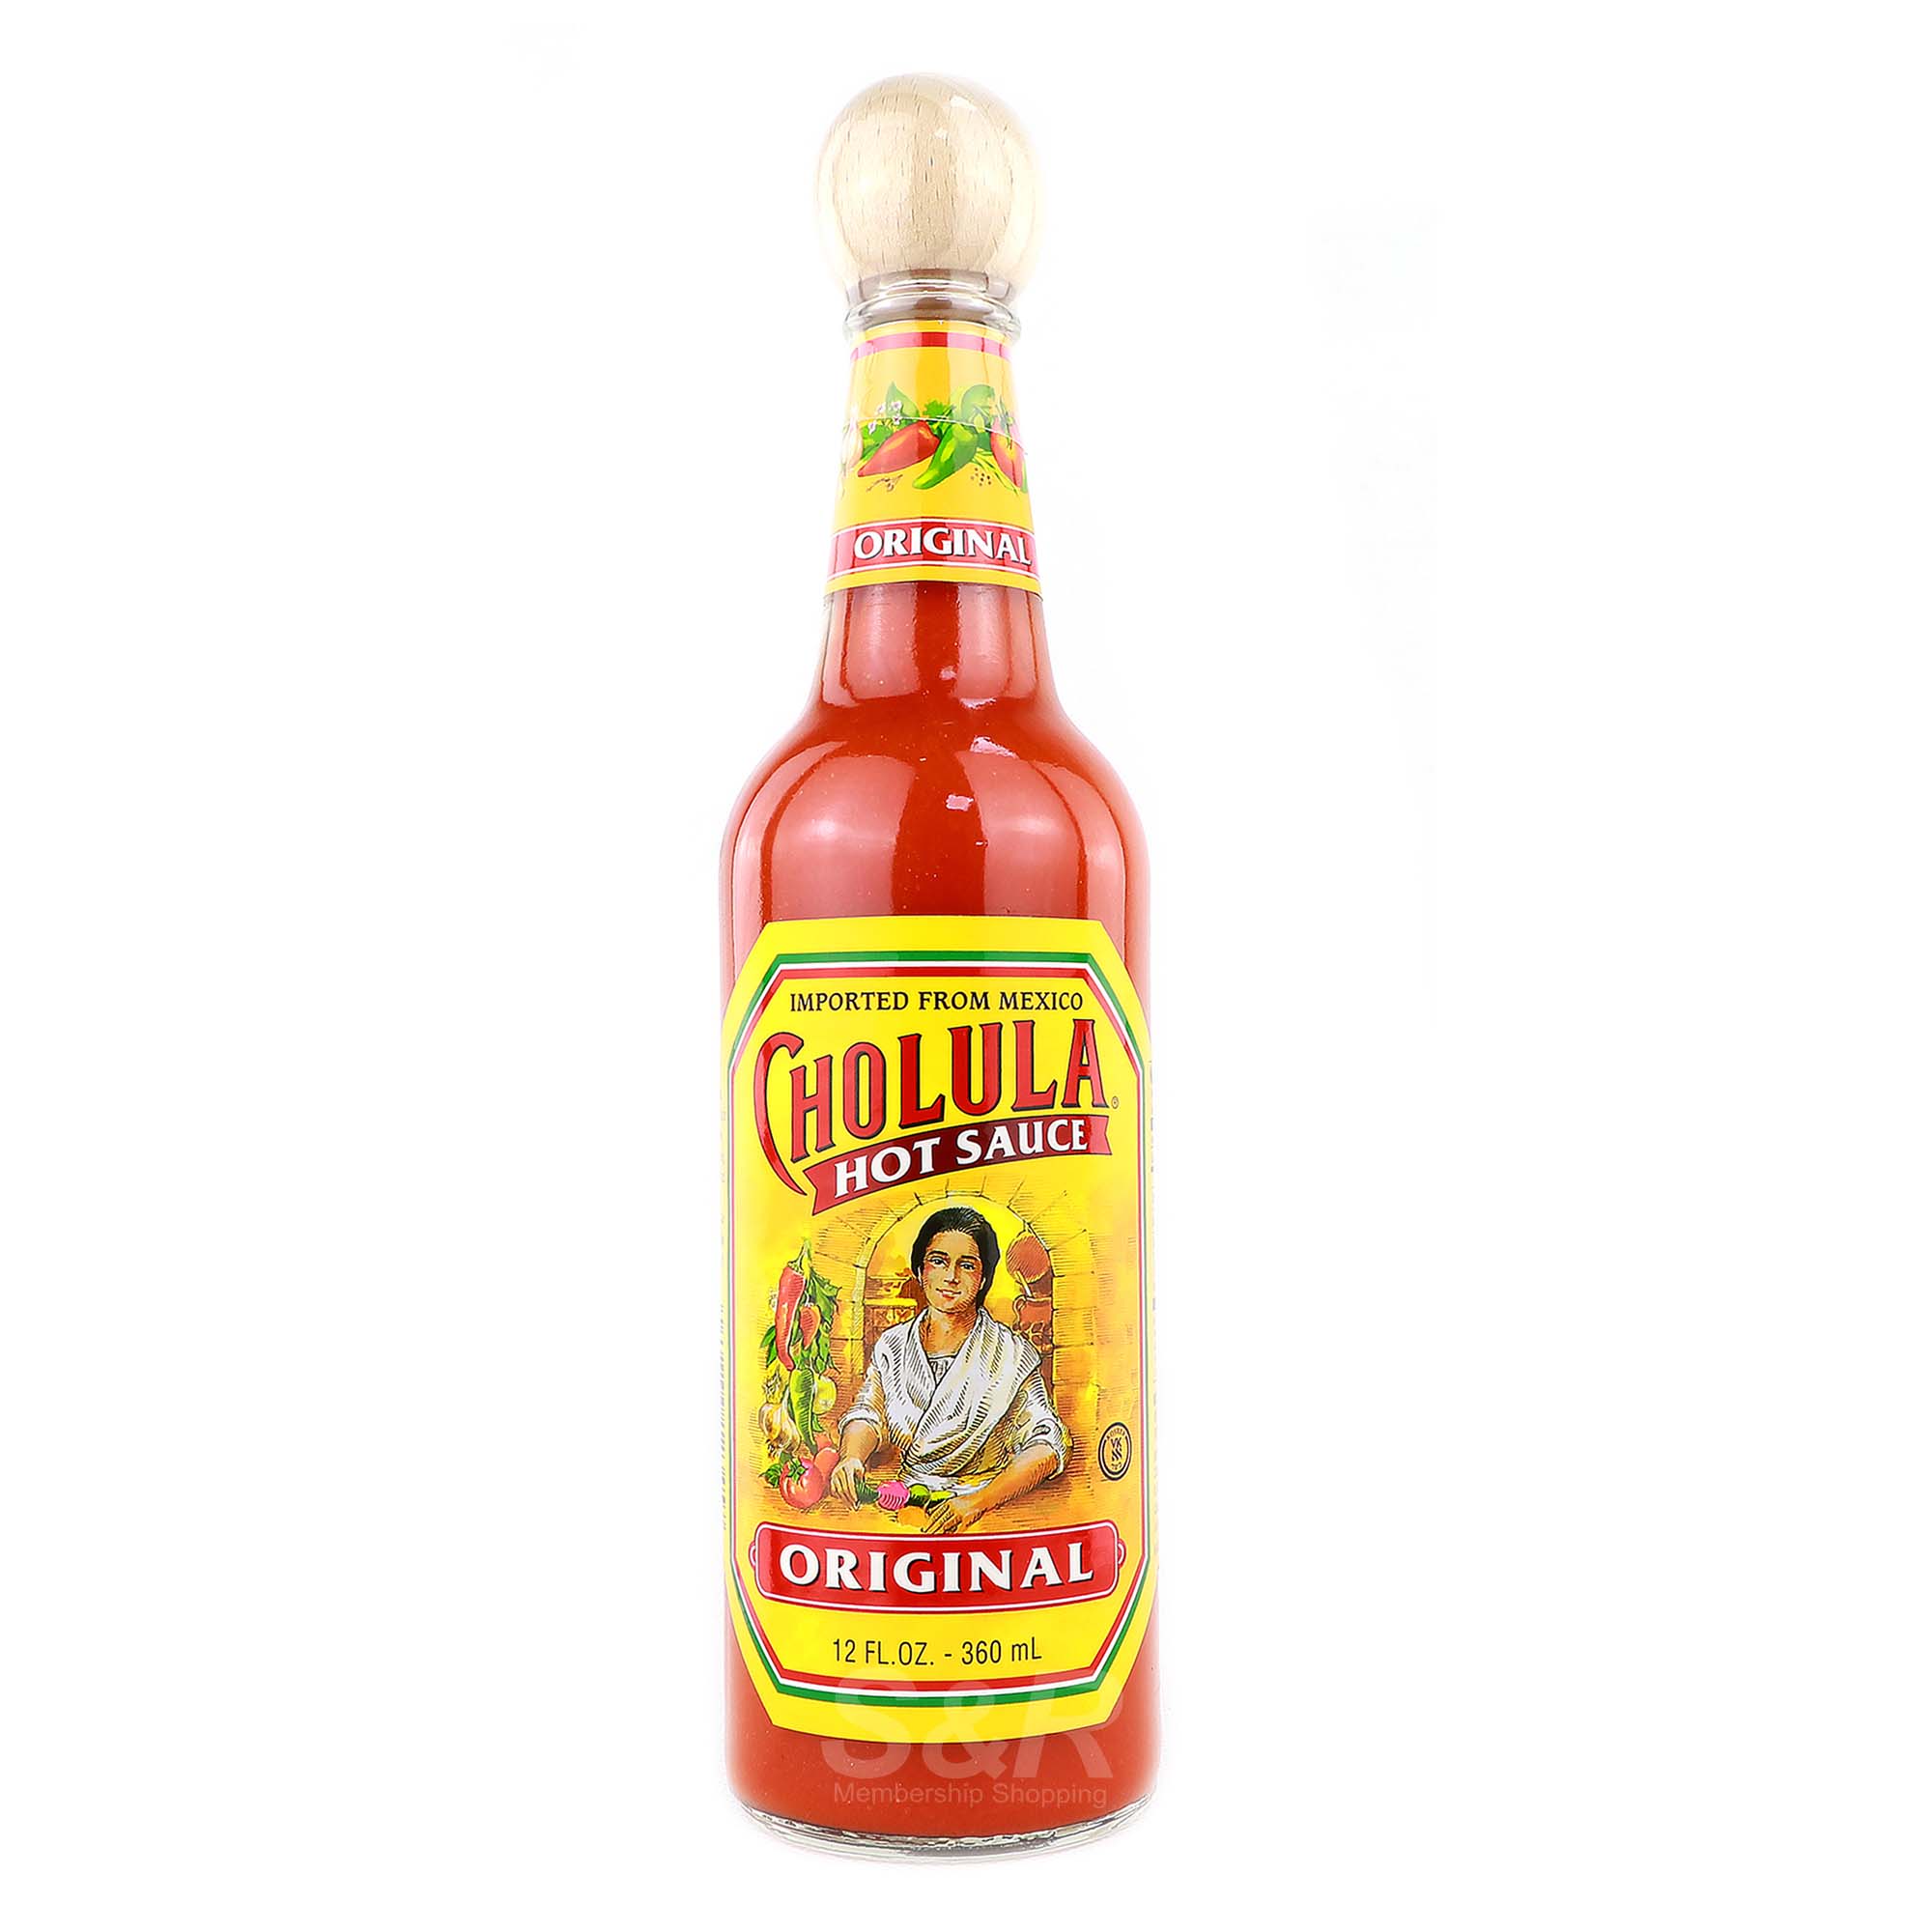 Cholula Hot Sauce Original 360mL